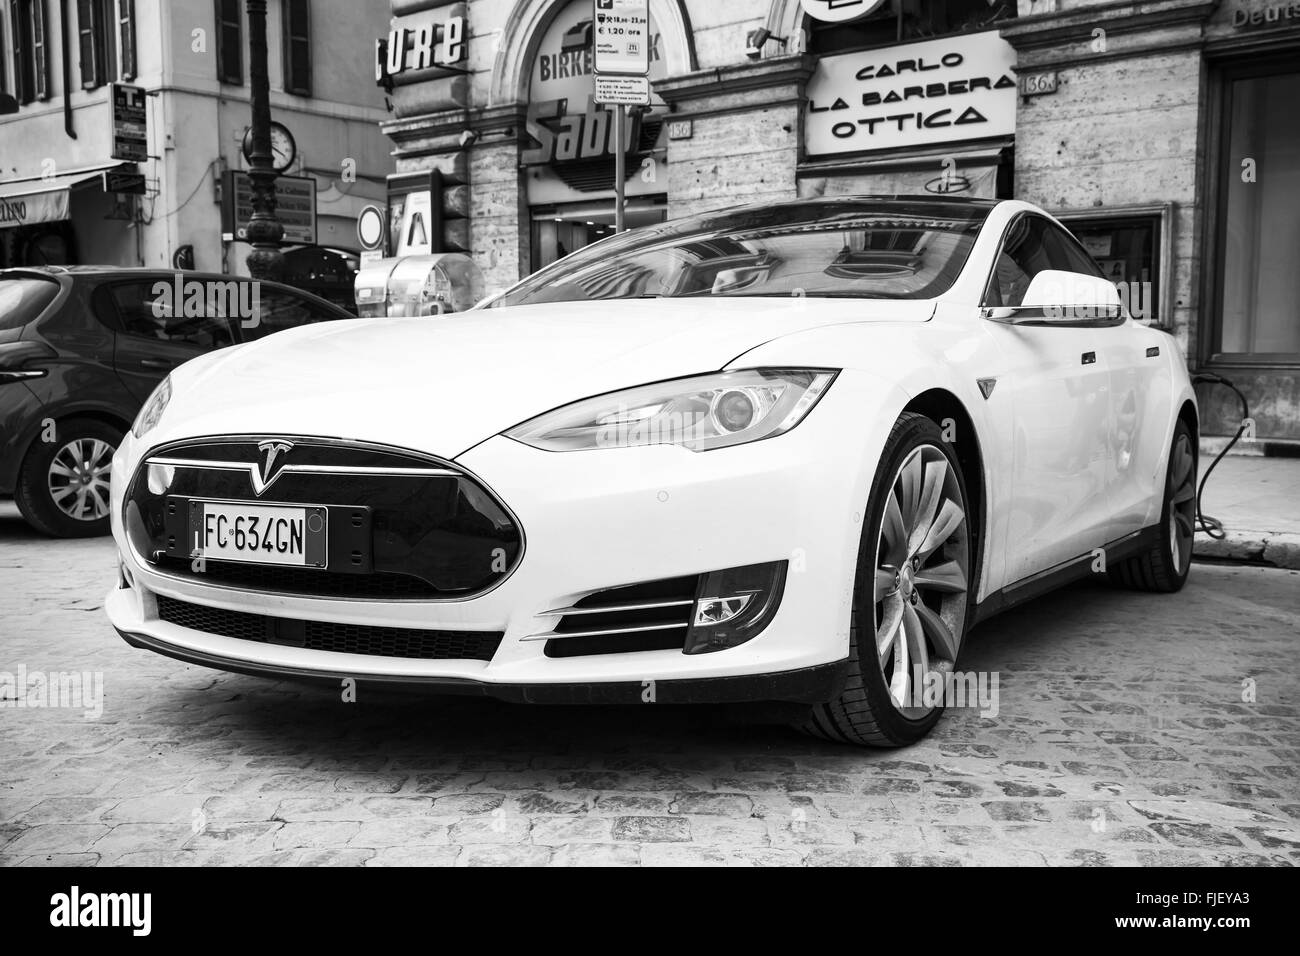 Rome, Italie - Février 13, 2016 : Blanc Tesla Model S voiture garée sur la route urbaine à Rome, vue de face, close-up noir et blanc Banque D'Images